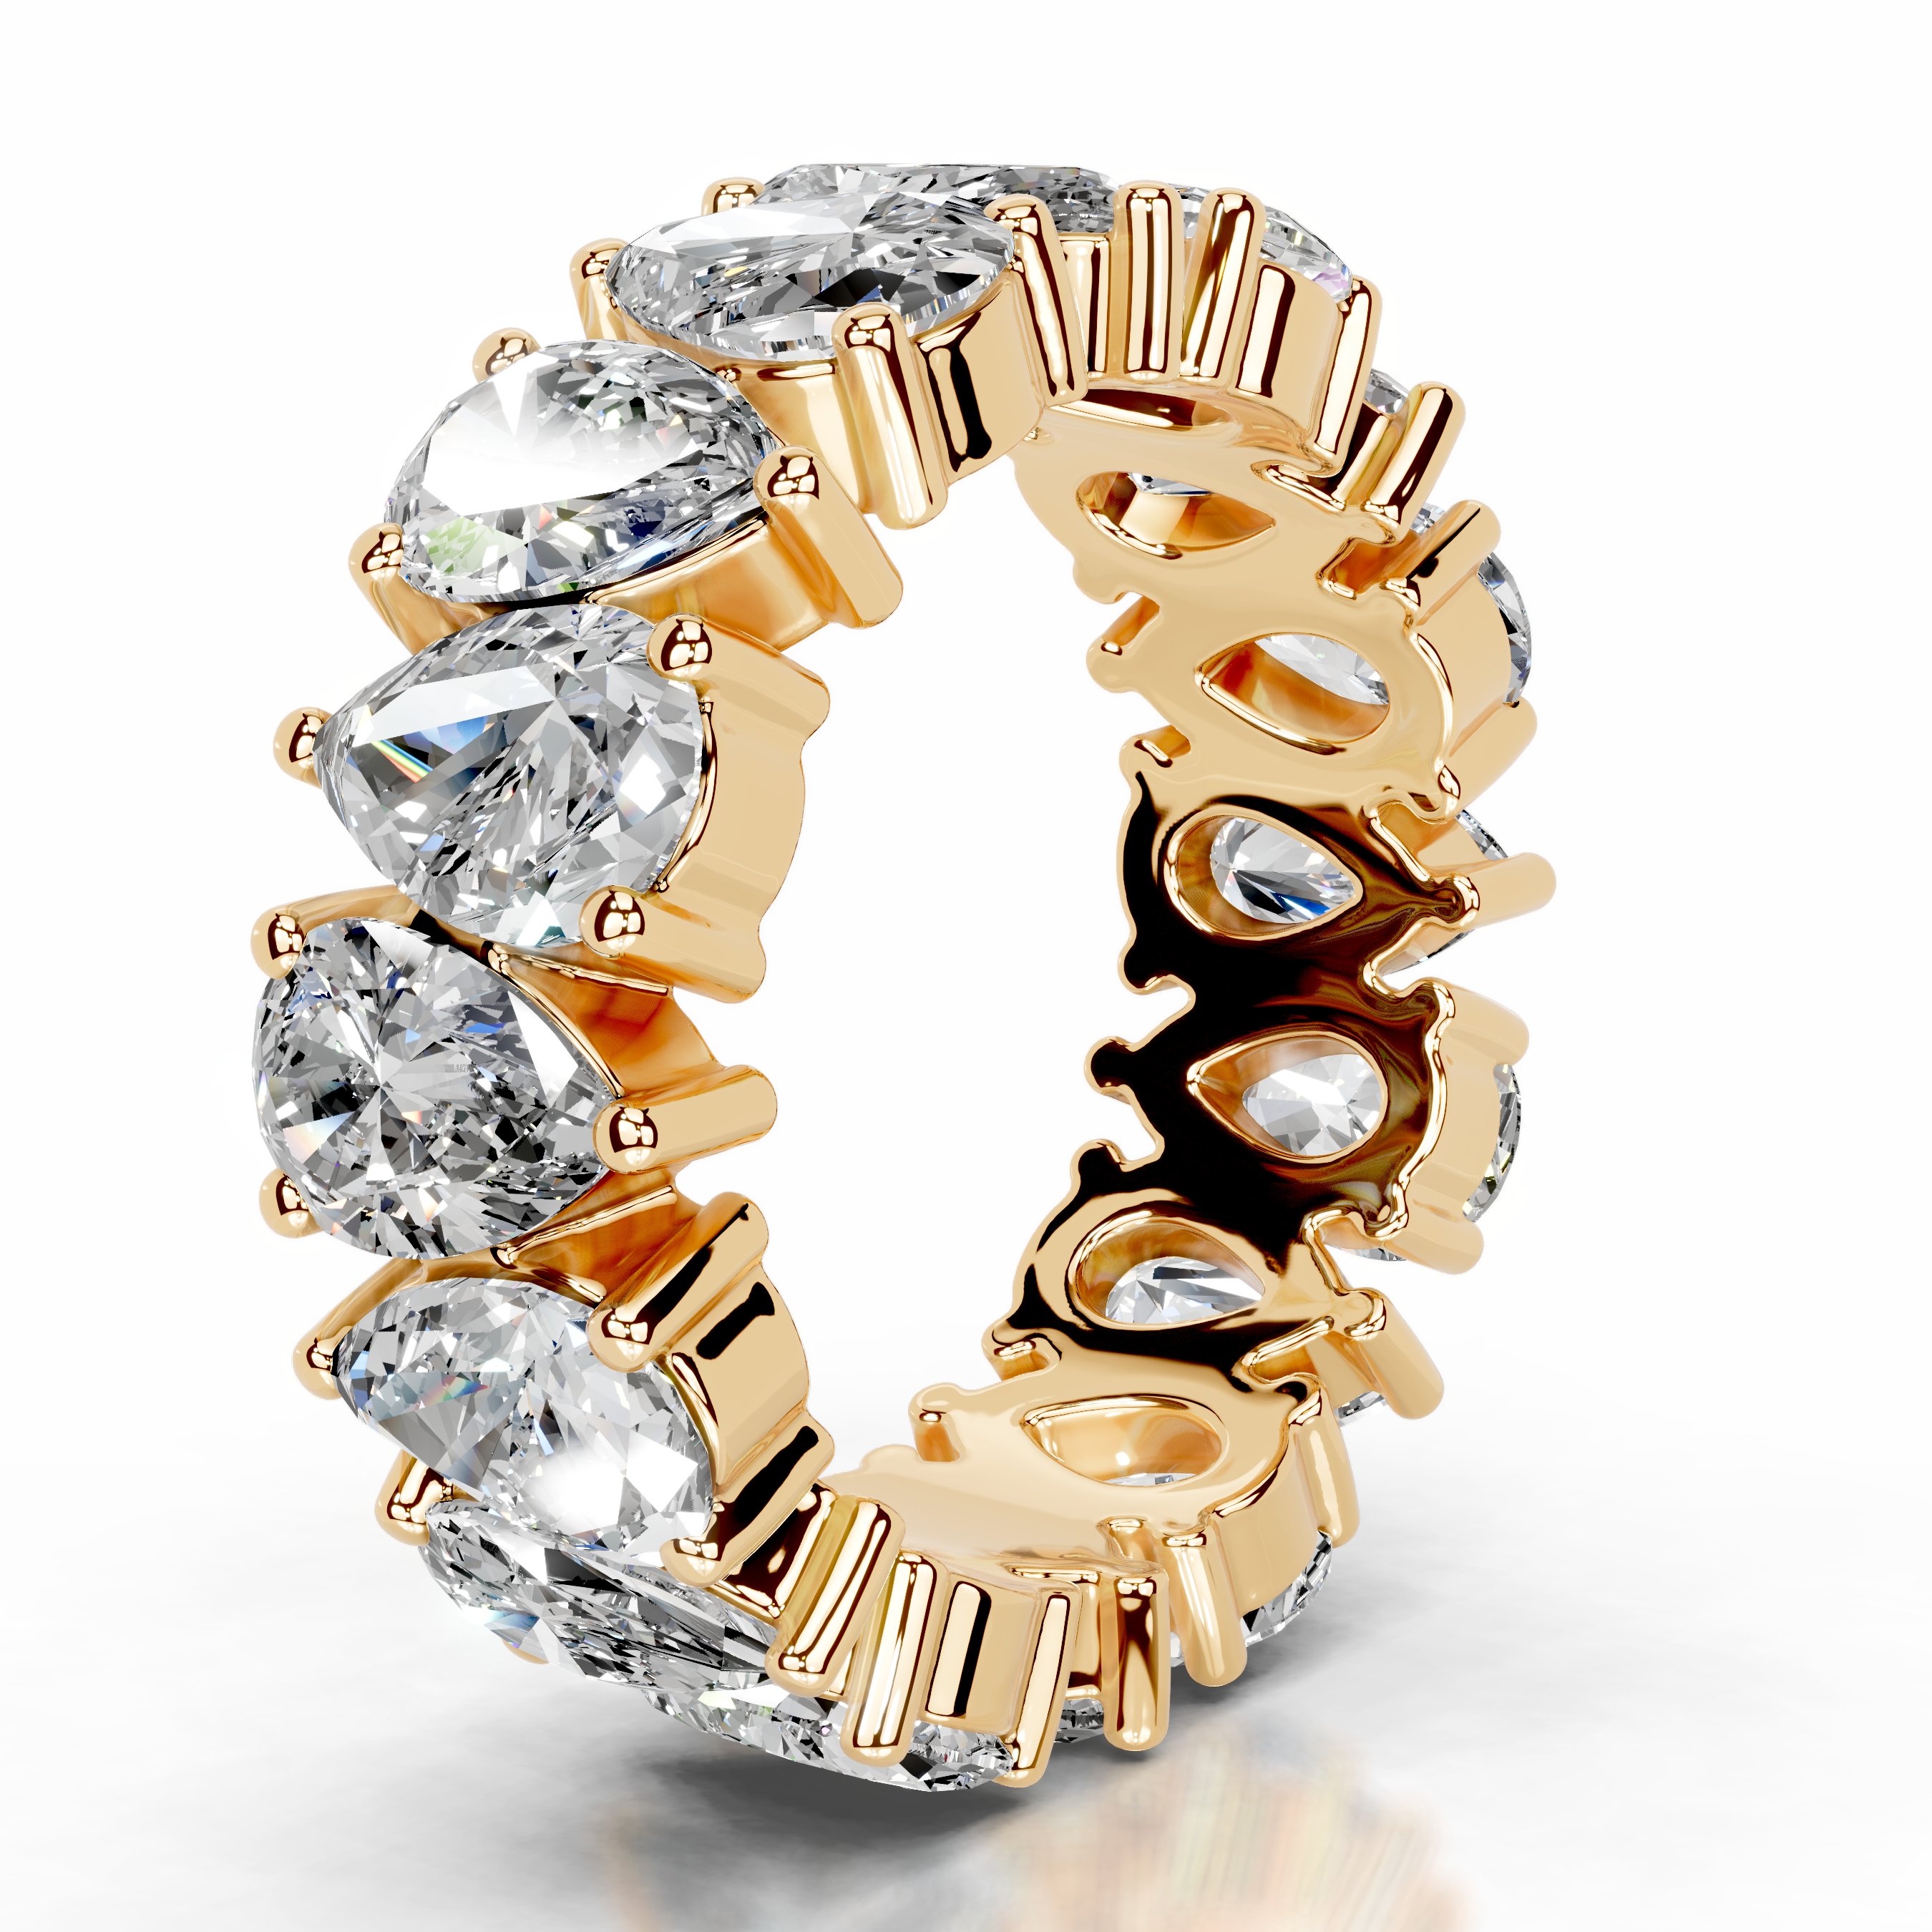 Sarah Lab Grown Diamond Wedding Ring   (6 Carat) -18K Yellow Gold